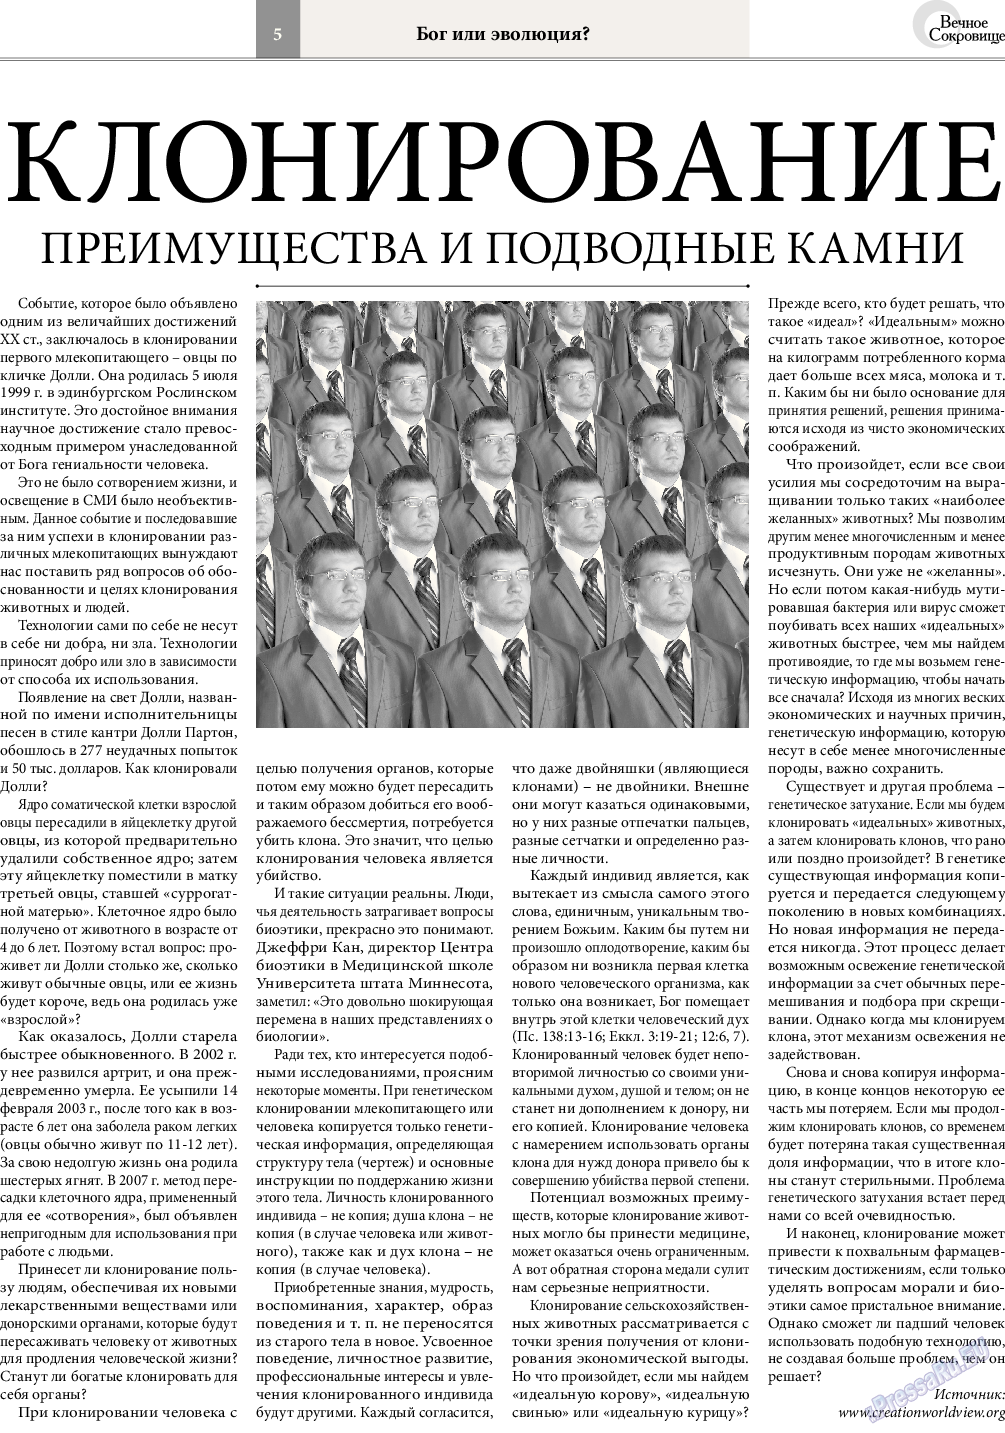 Вечное сокровище, газета. 2015 №2 стр.5